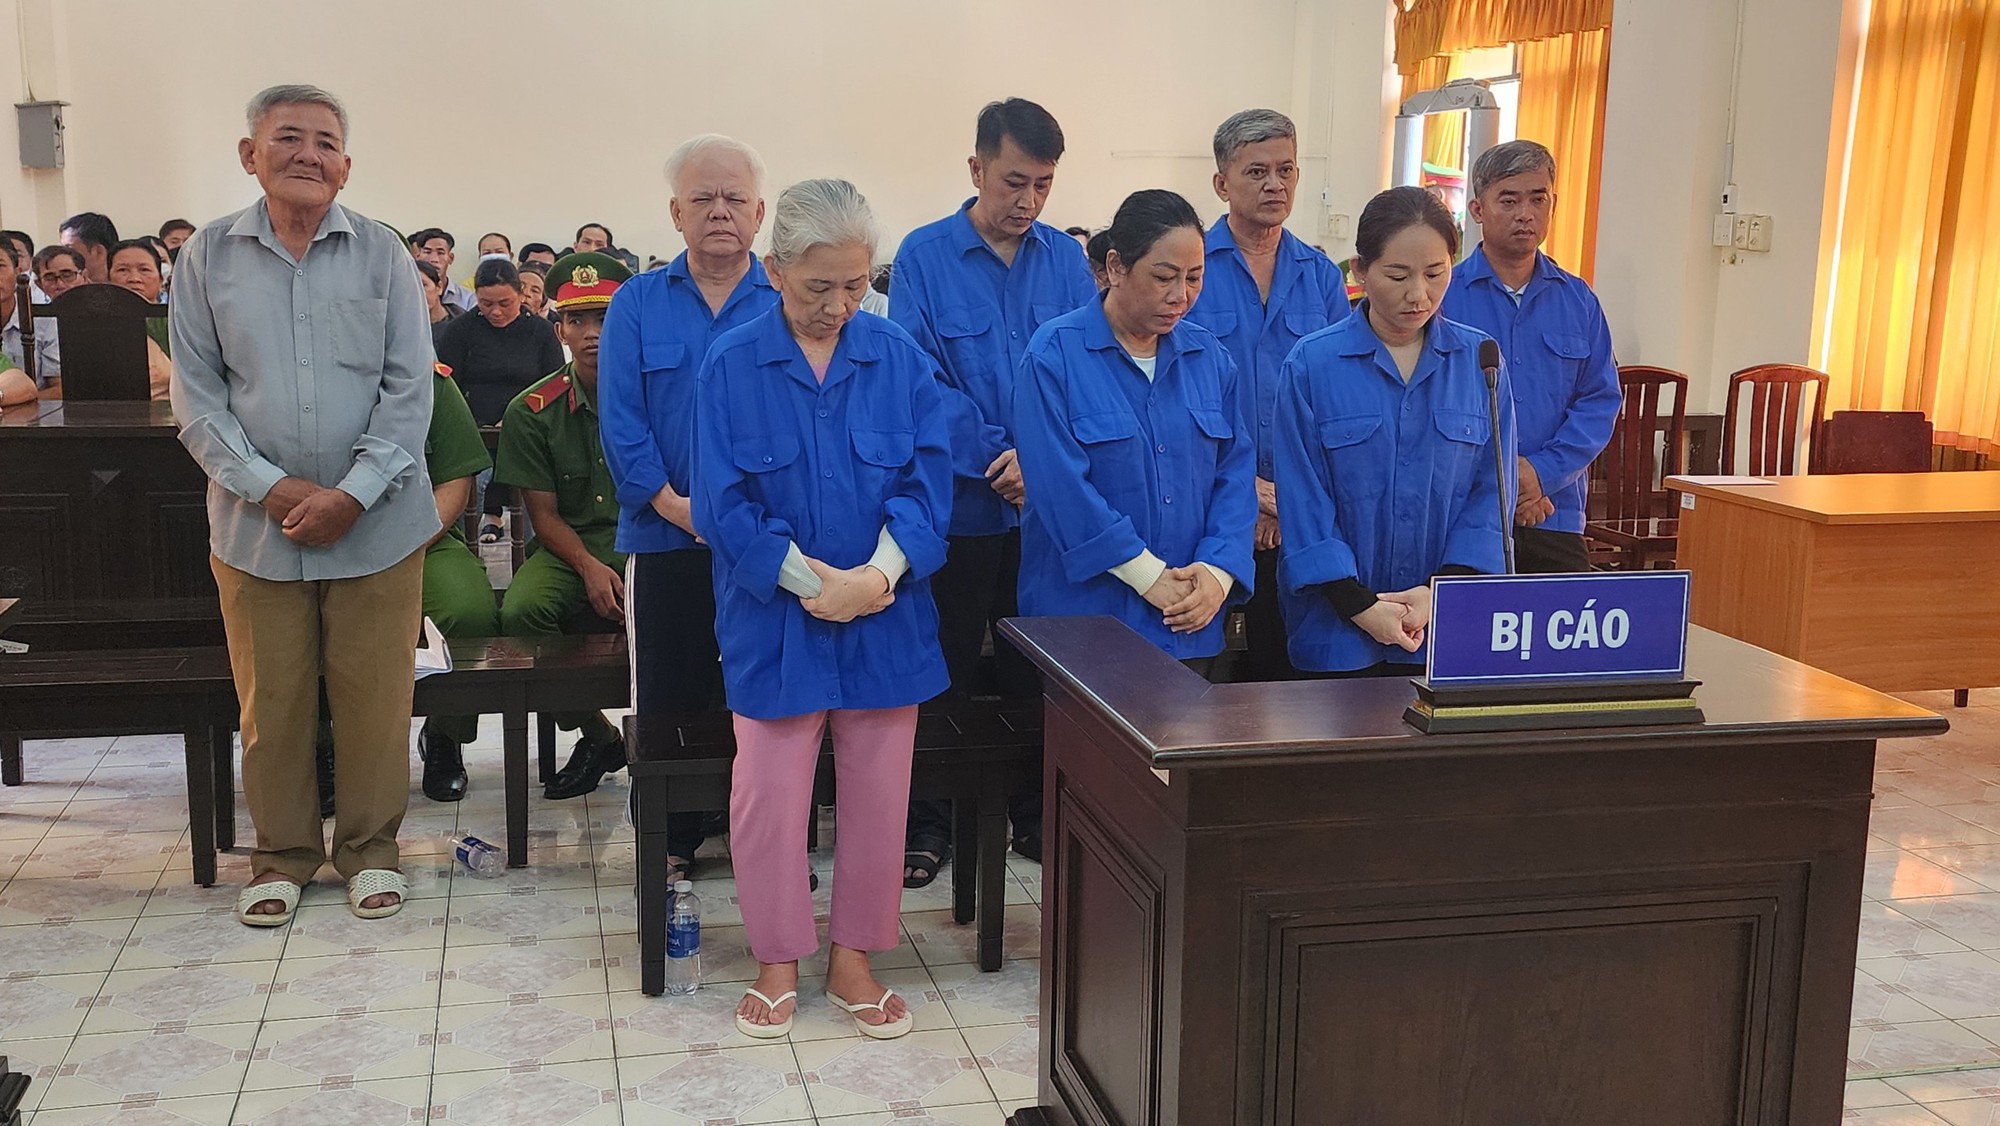 Vì 48 triệu đồng bất chính, 3 bác sĩ ở Kiên Giang lãnh án tù- Ảnh 1.